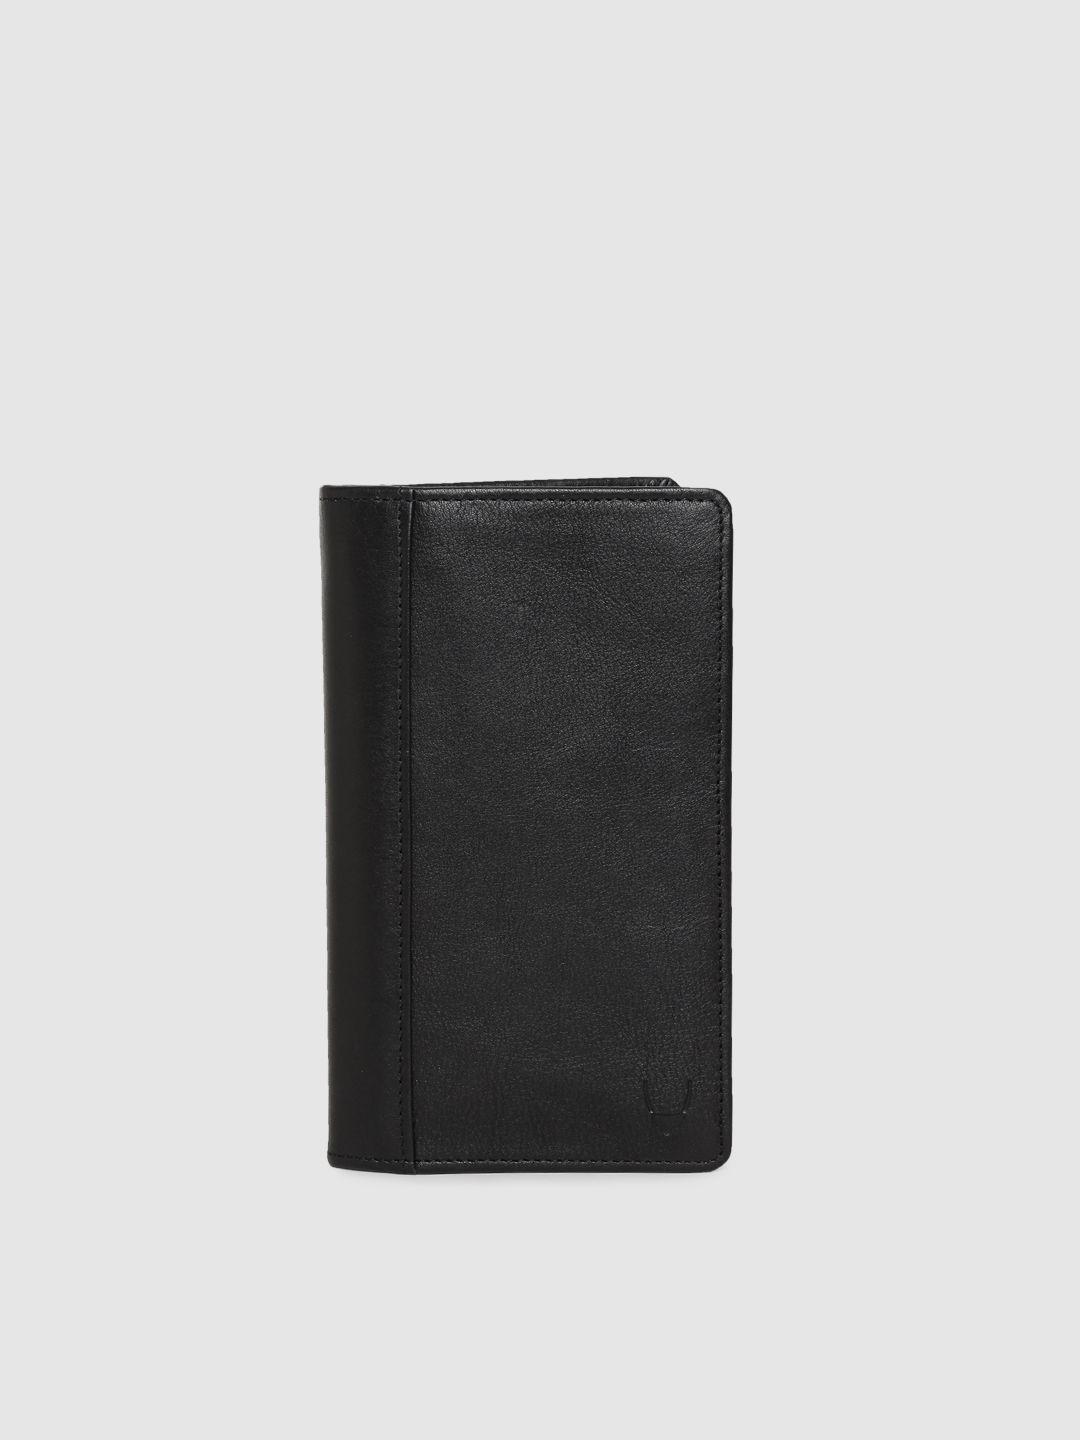 hidesign men black solid leather card holder